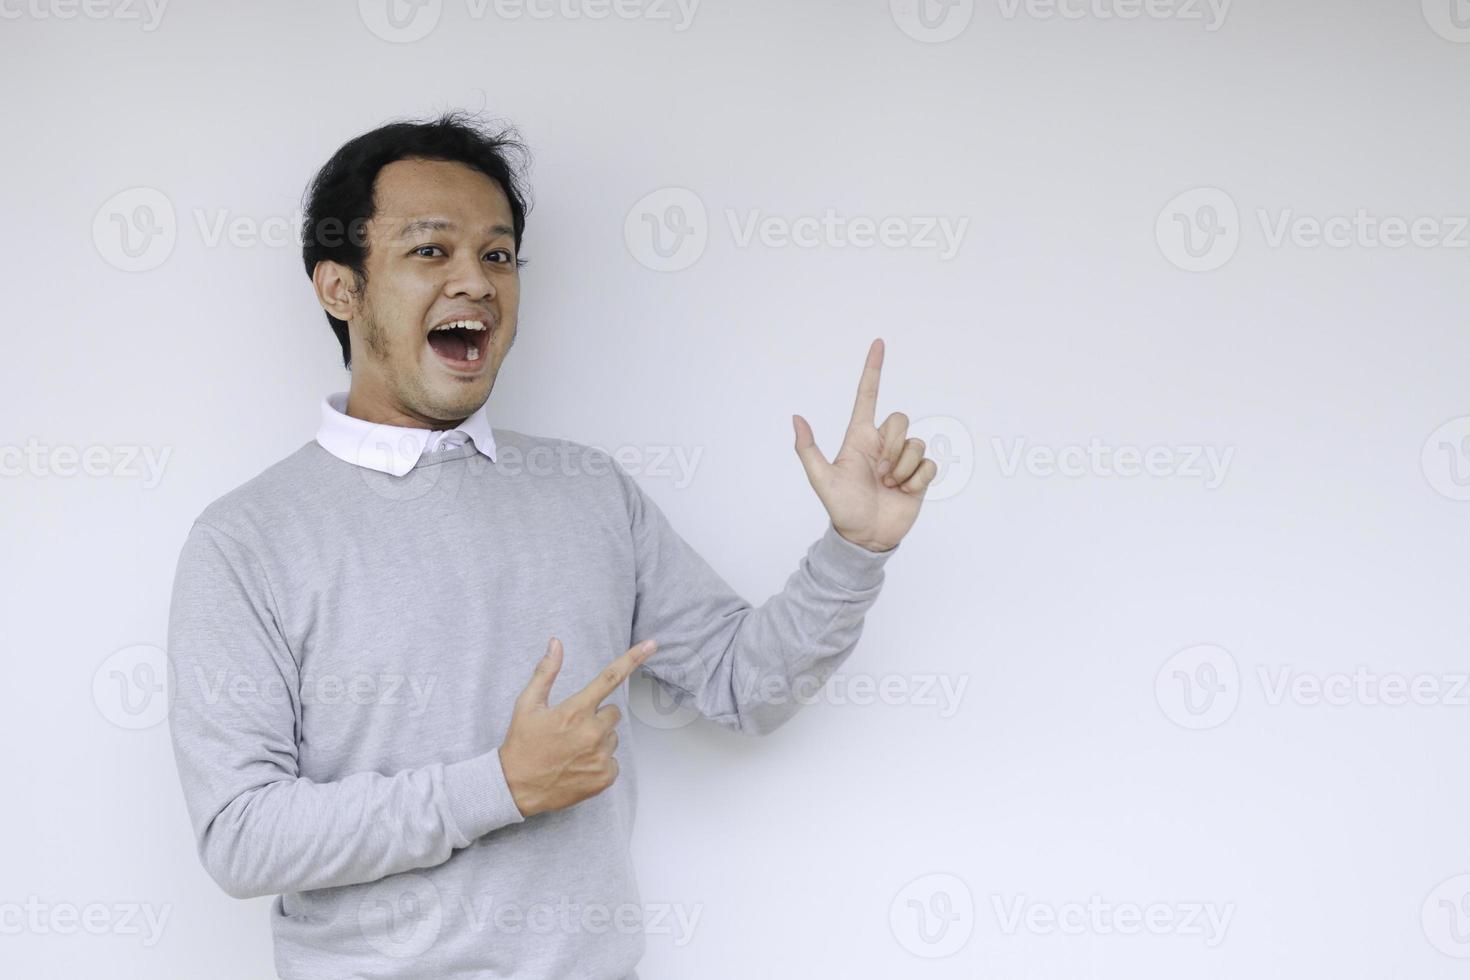 jeune homme asiatique est souriant et heureux avec le point de la main sur l'espace vide photo